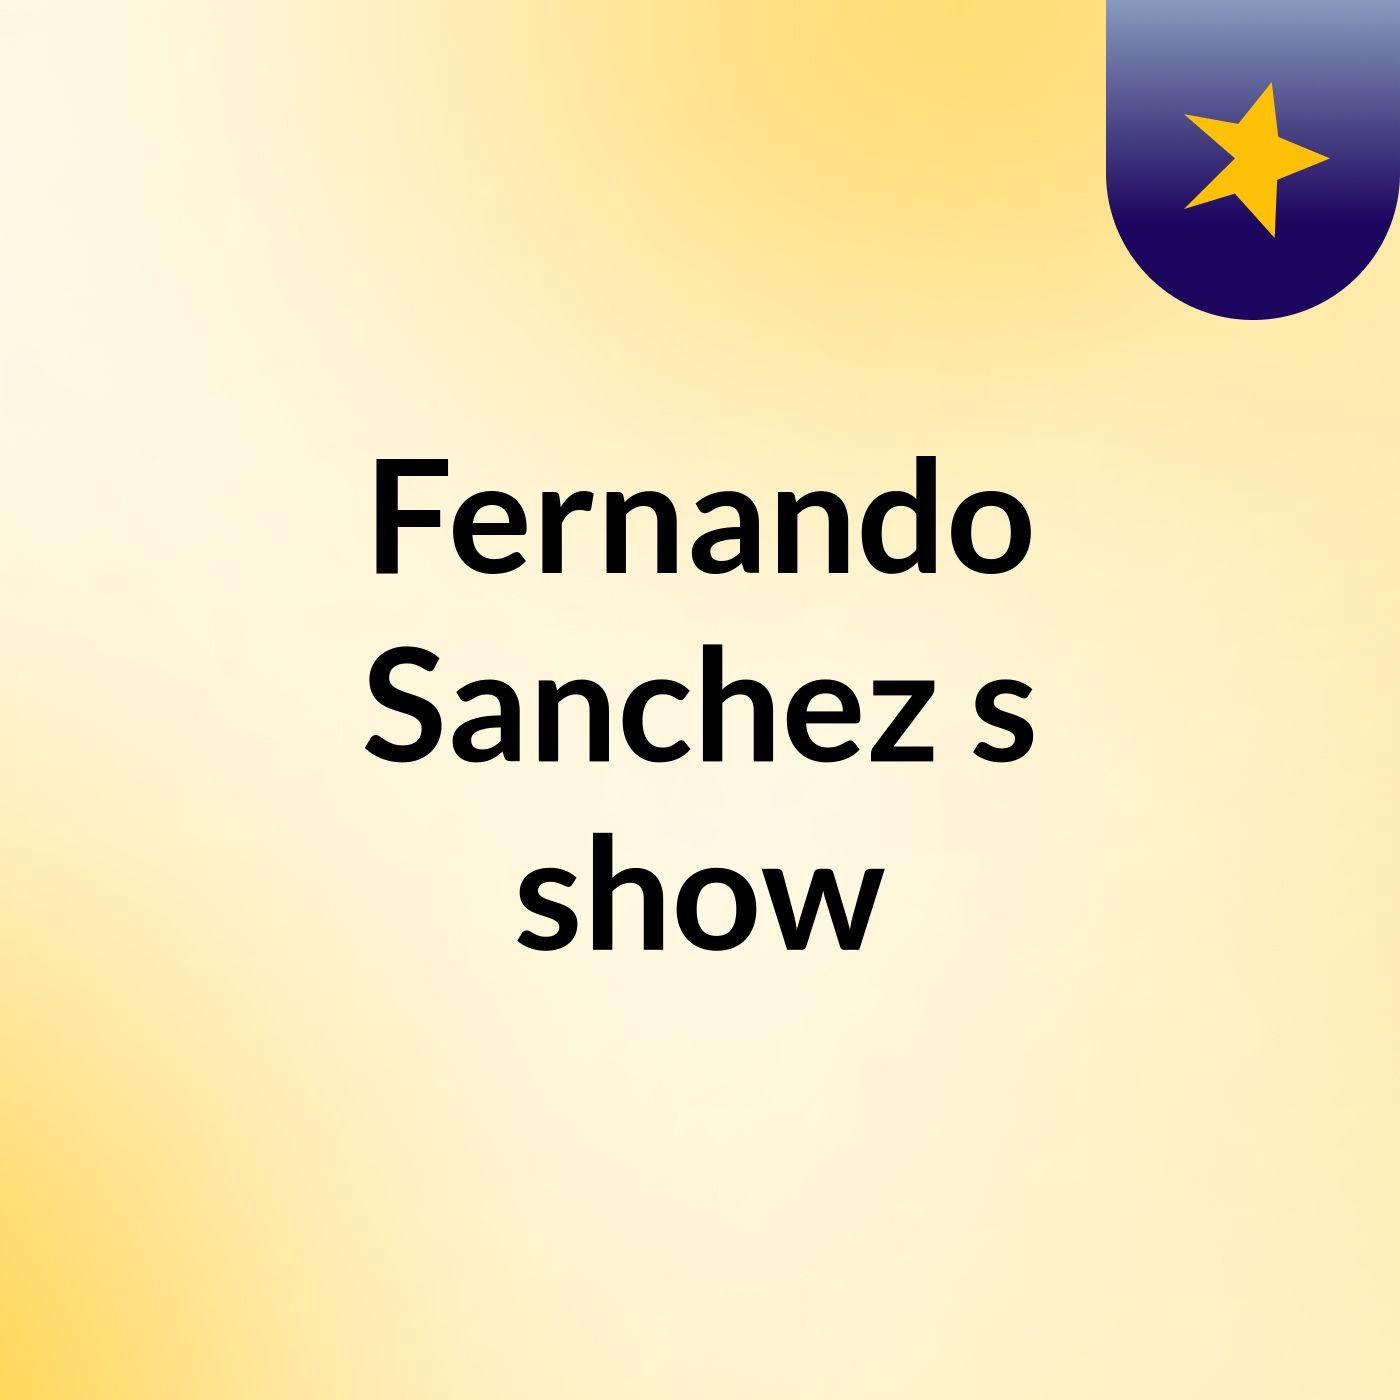 Fernando Sanchez's show